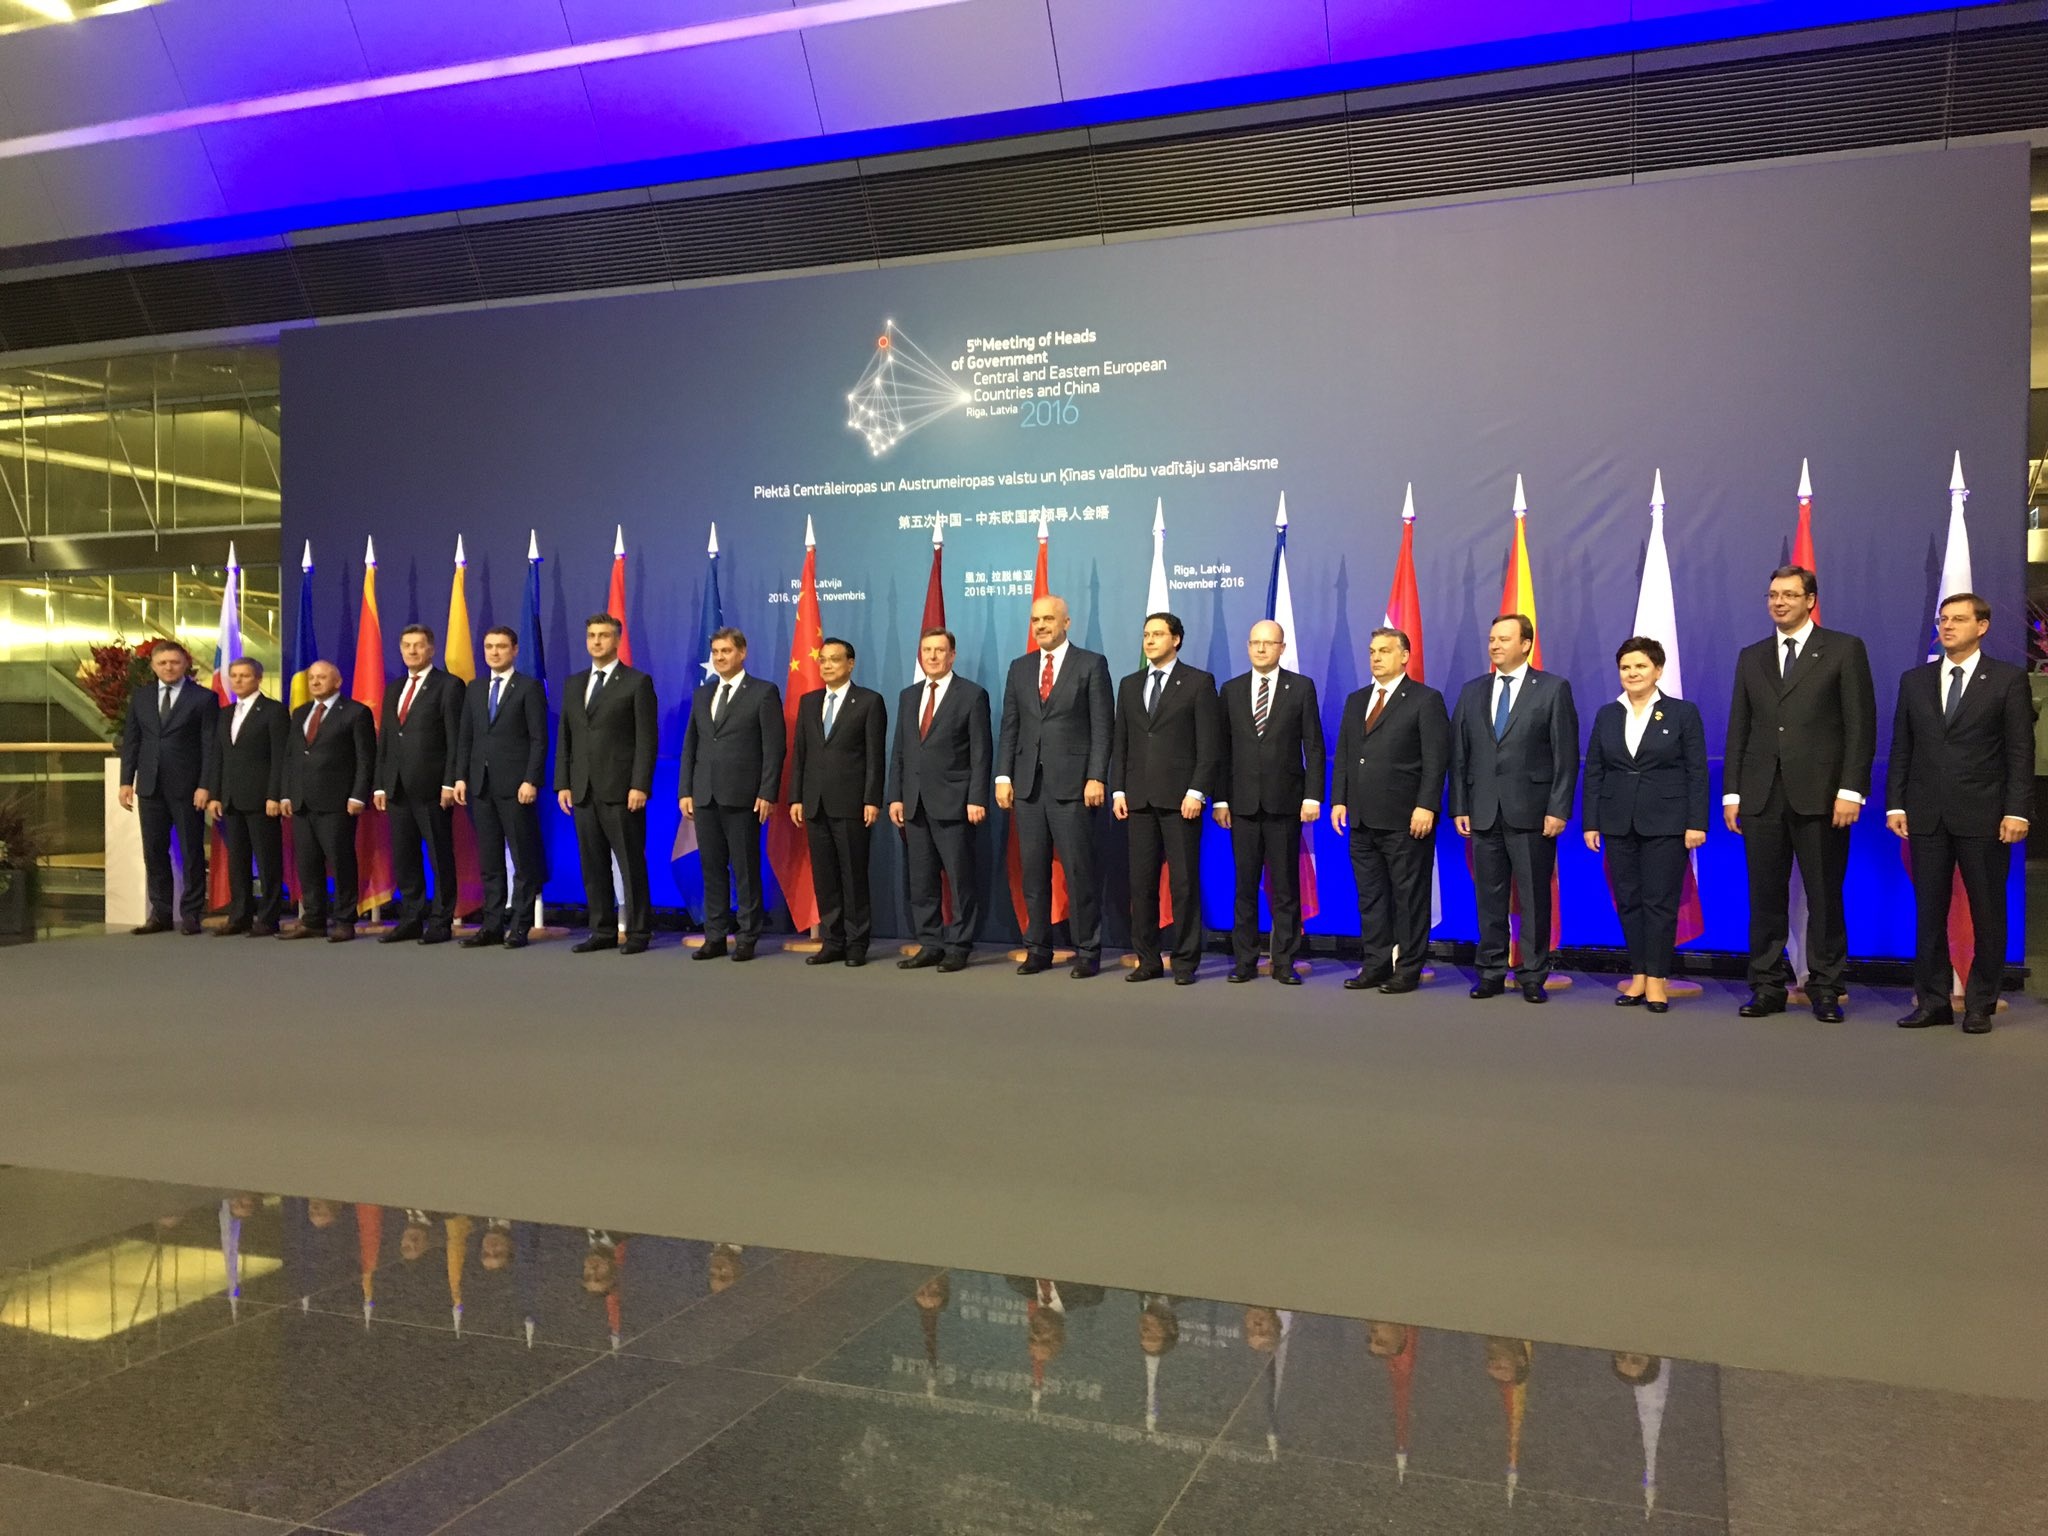 Szczyt 16+1 - Chiny i Europa Środkowa. Źródło: Twitter, KPRM